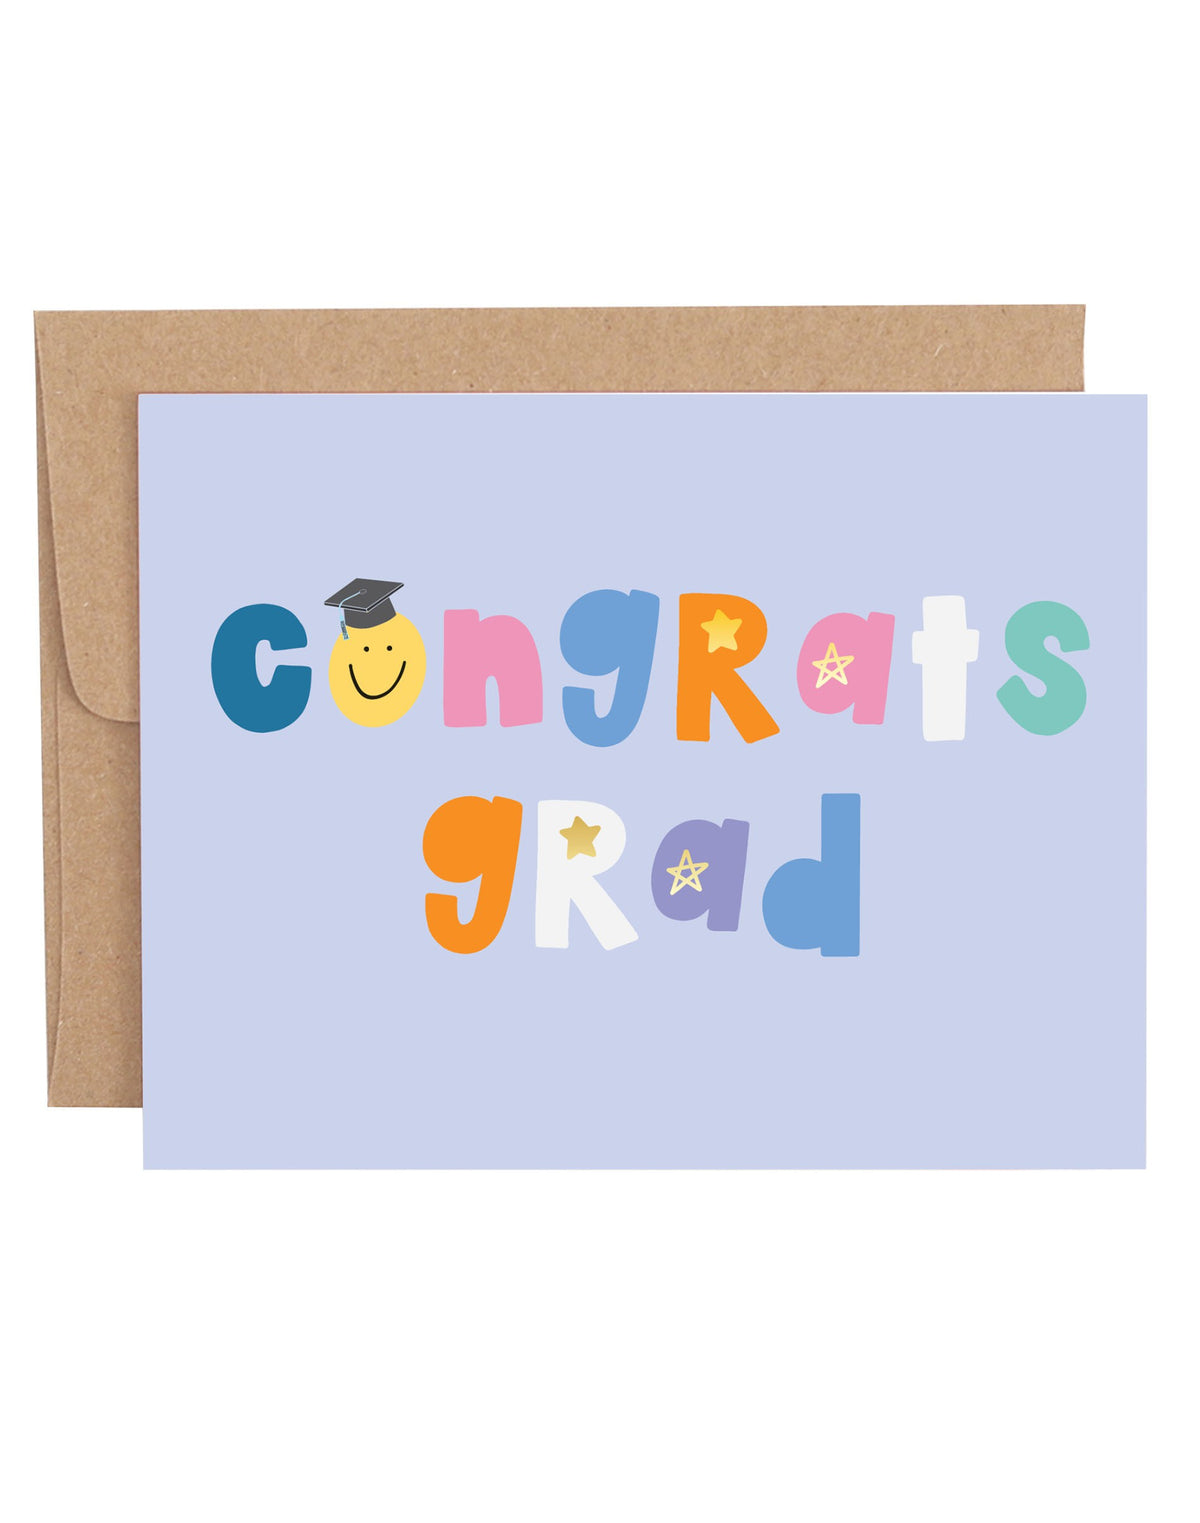 Congrats Grad Greeting Card Cover